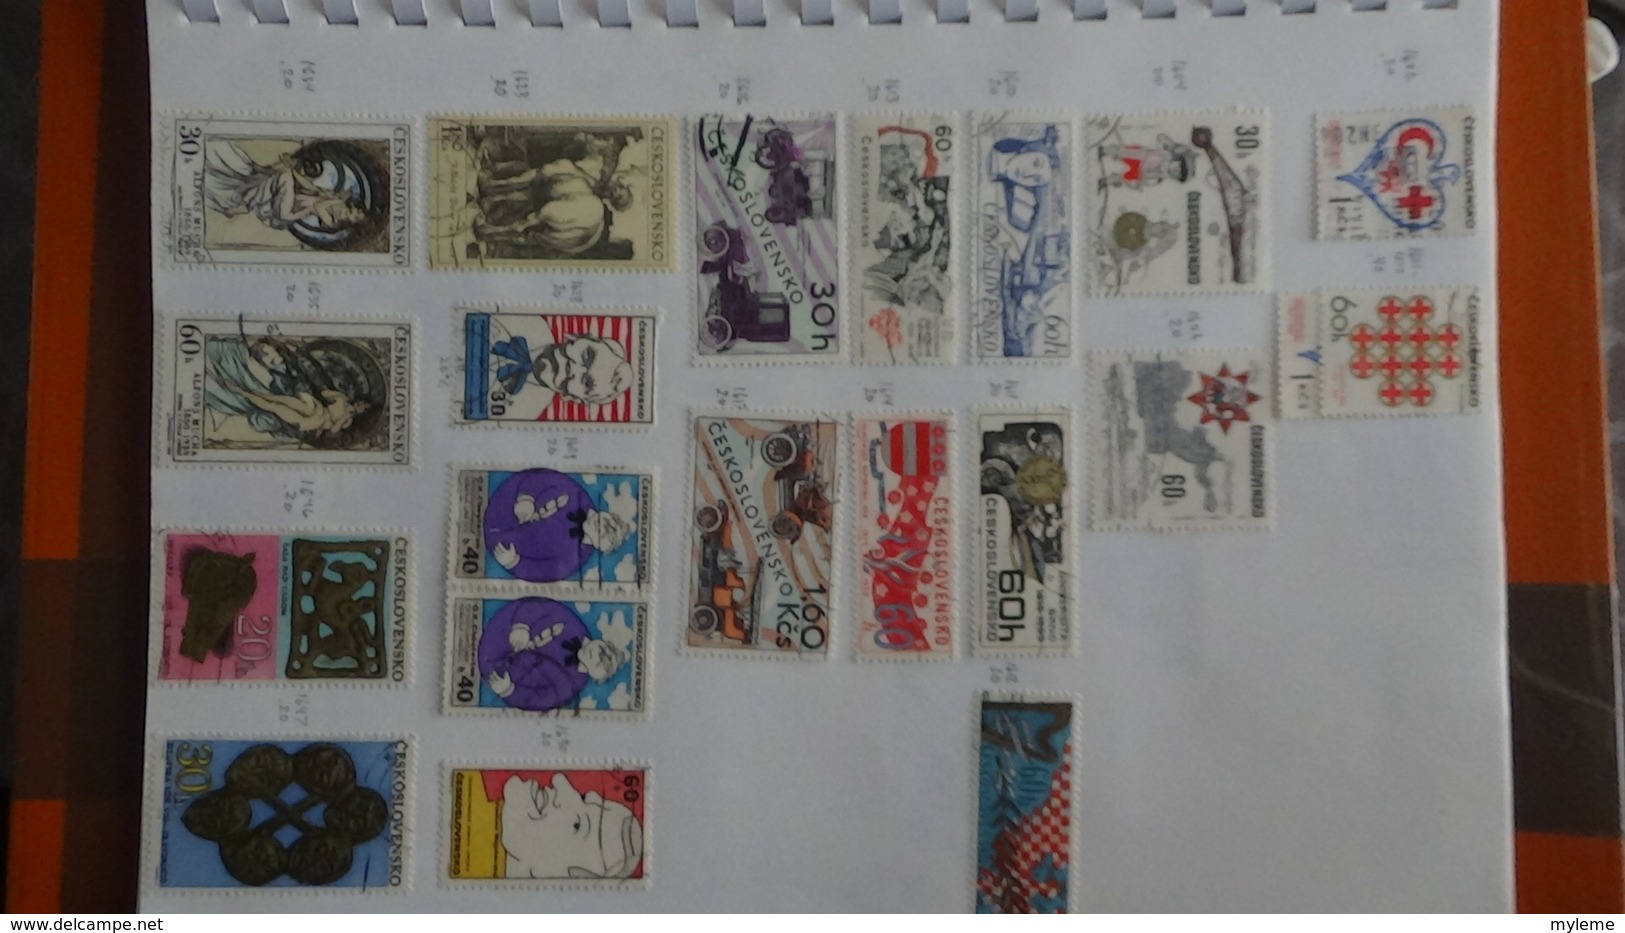 A257 Cahier de timbres de Tchécoslovaqiue et Albanie  !!! Voir commentaires